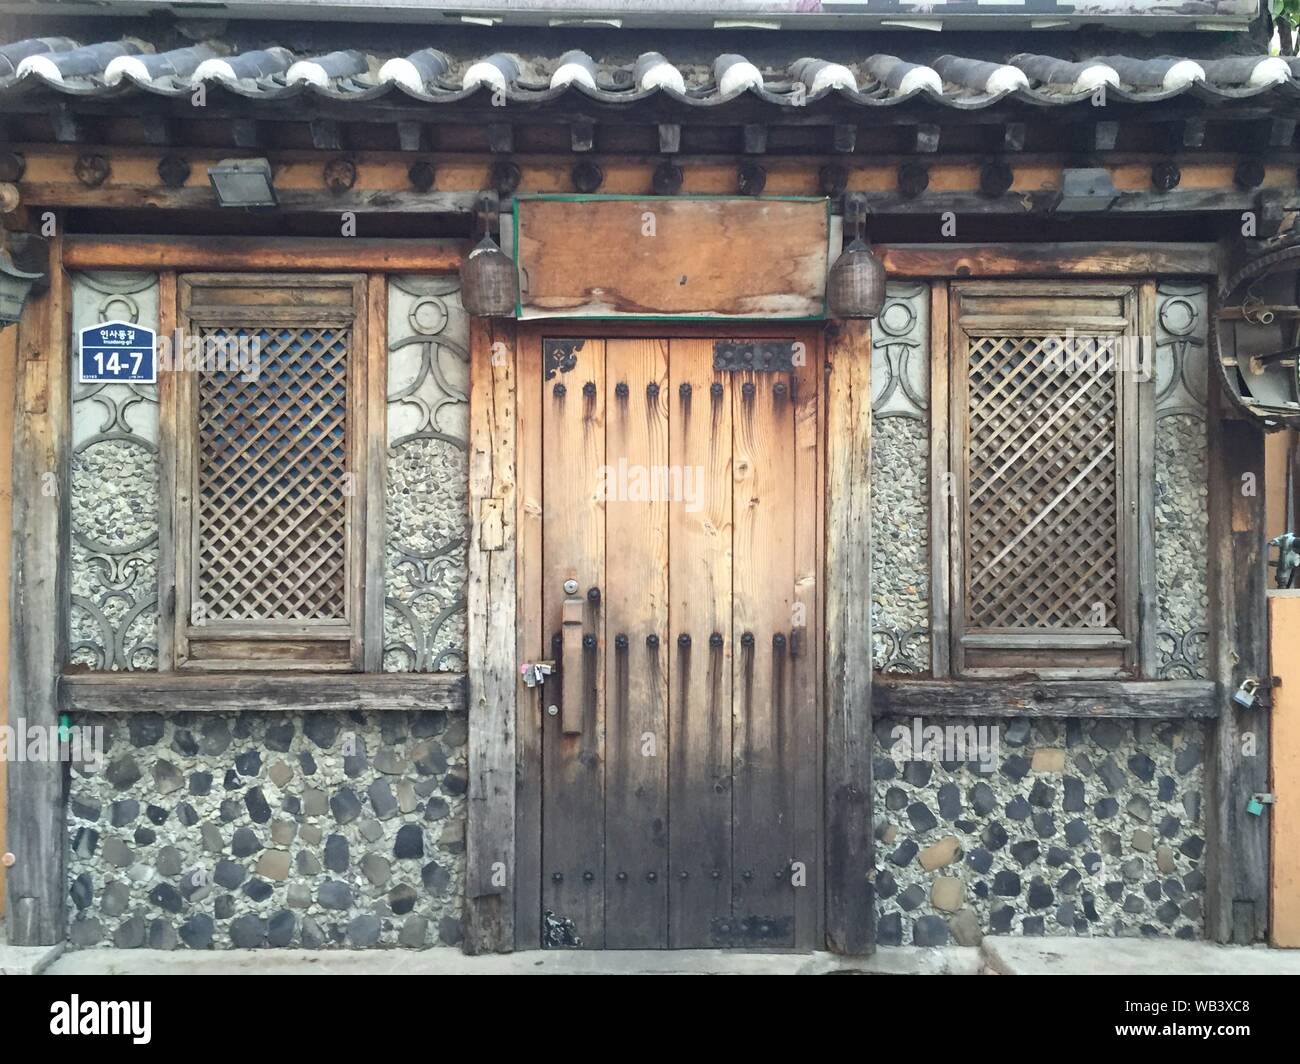 Seul viste sulla città, strade e templi in Corea del Sud Foto Stock